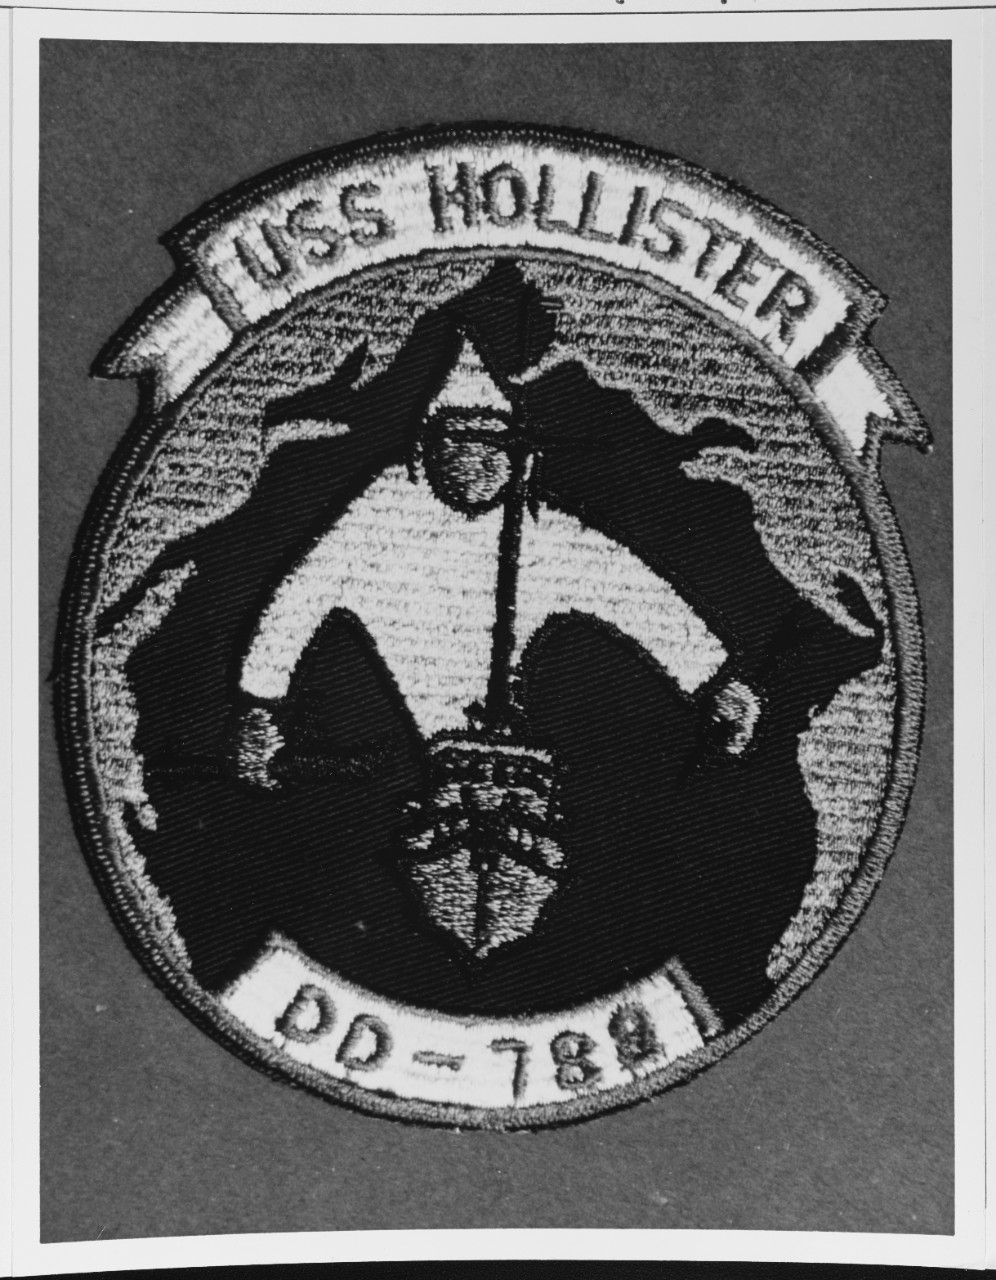 Insignia: USS HOLLISTER (DD-788)